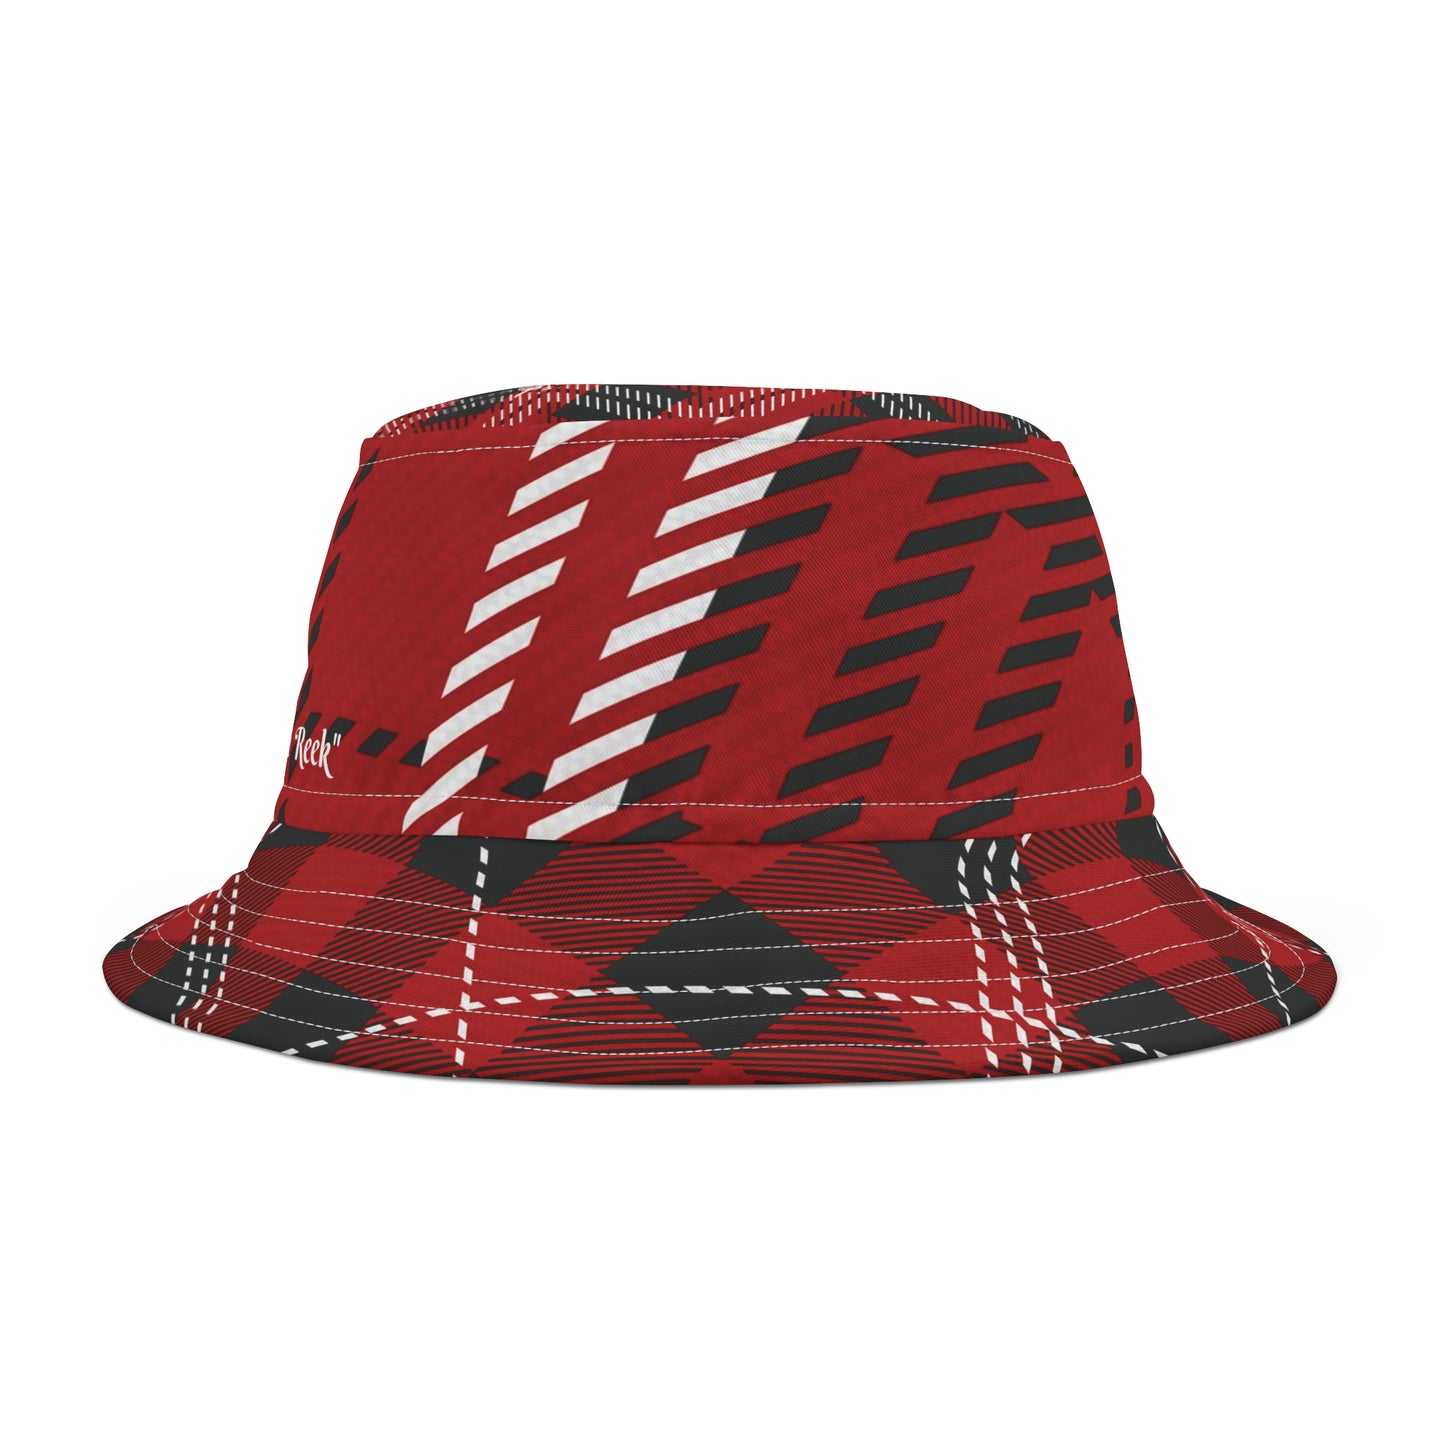 Scottish Plaid "Lang May Yer Lum Reek" *Red-Black-White Bucket Hat